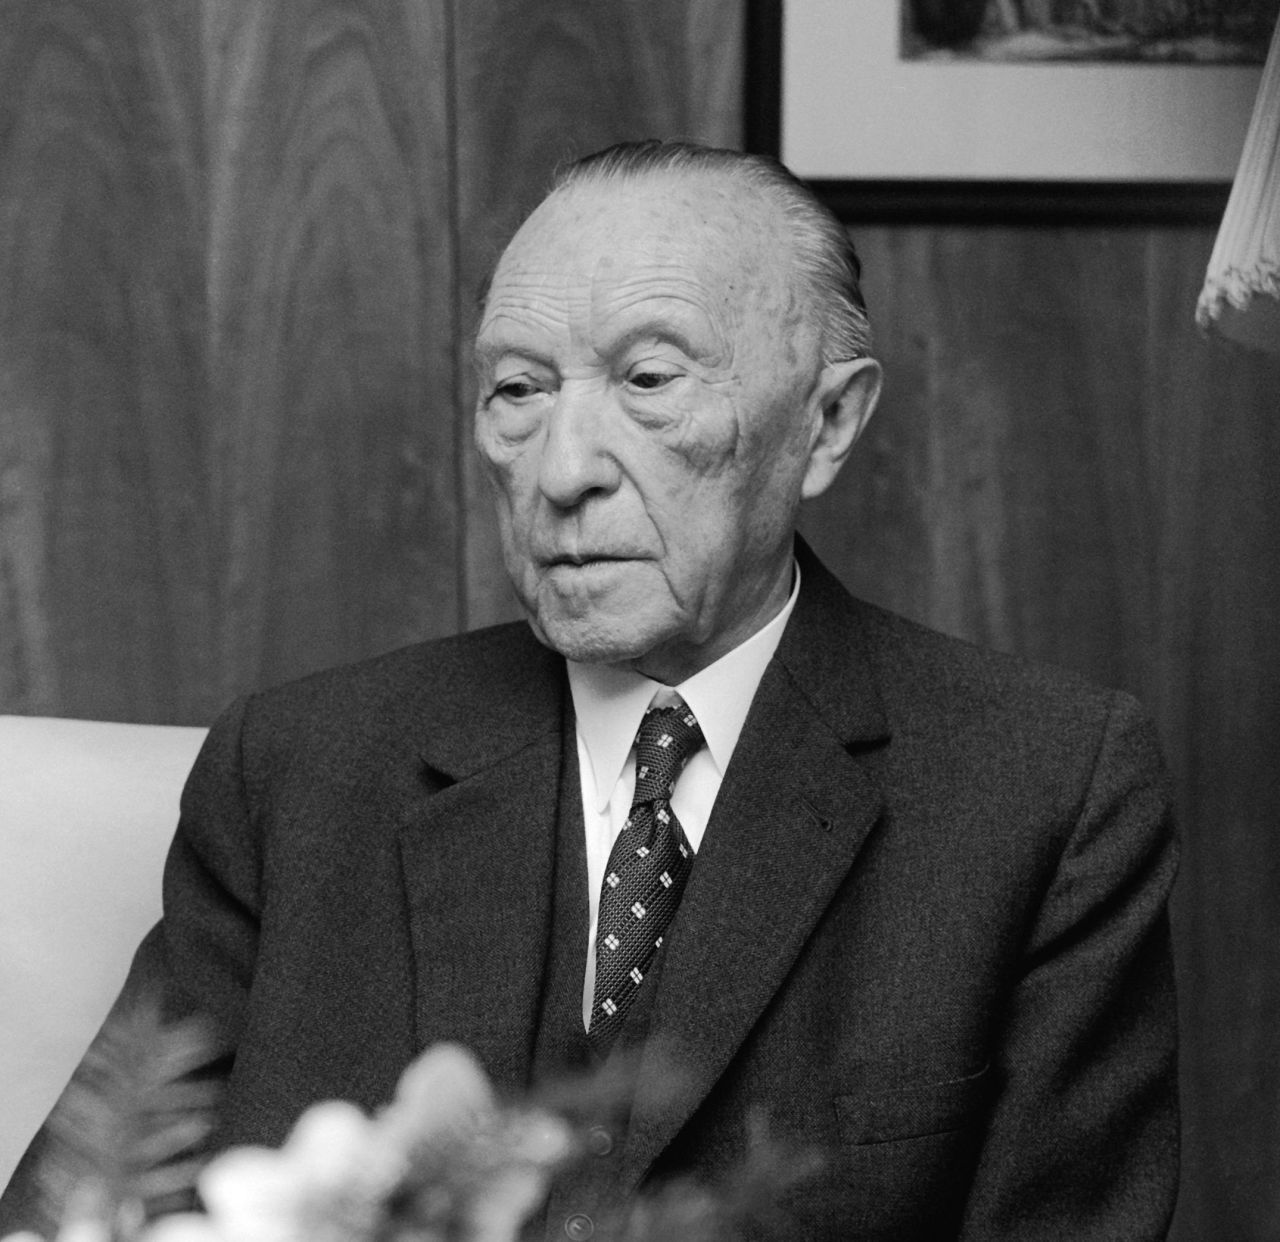 Konrad Adenauer war der 1. Bundeskanzler nach dem 2. Weltkrieg und von 1949 bis 1963 im Amt. Nur eine der vielen Ehrungen: Ein Regierungsflieger ist nach ihm benannt.